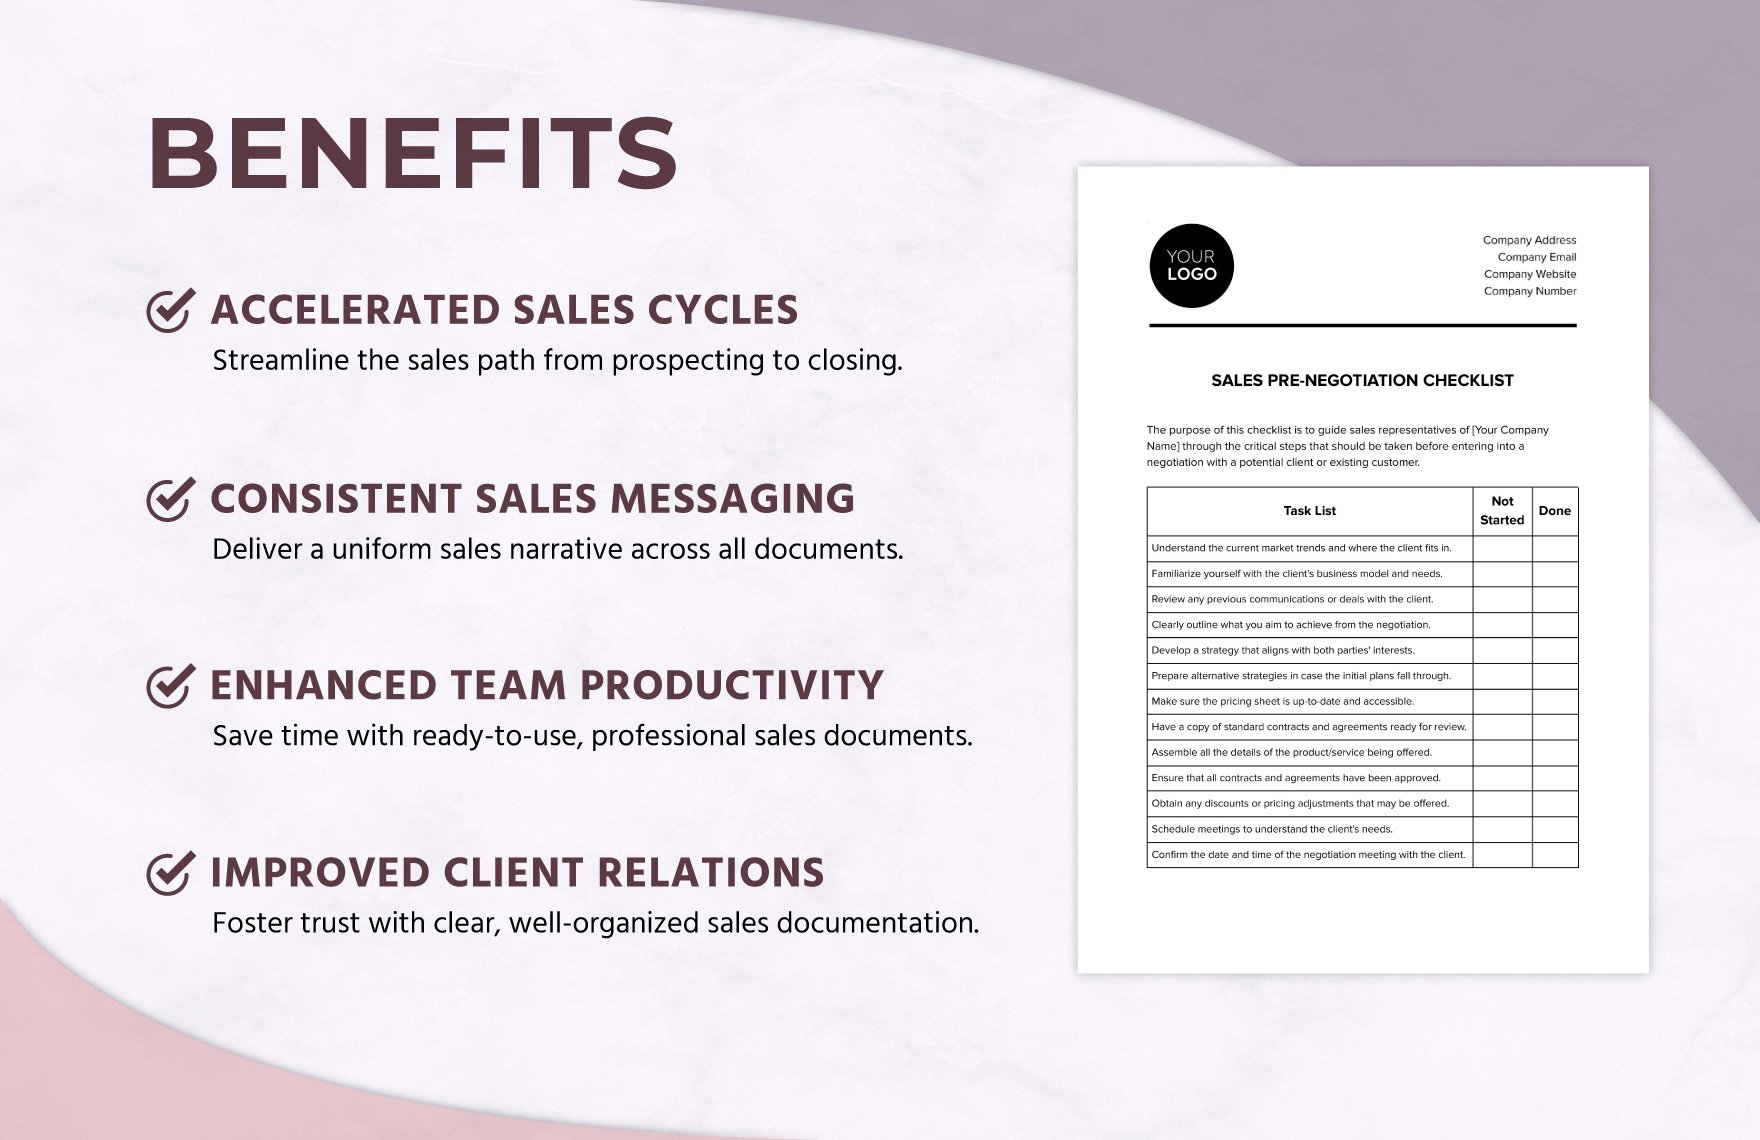 Sales Pre-Negotiation Checklist Template